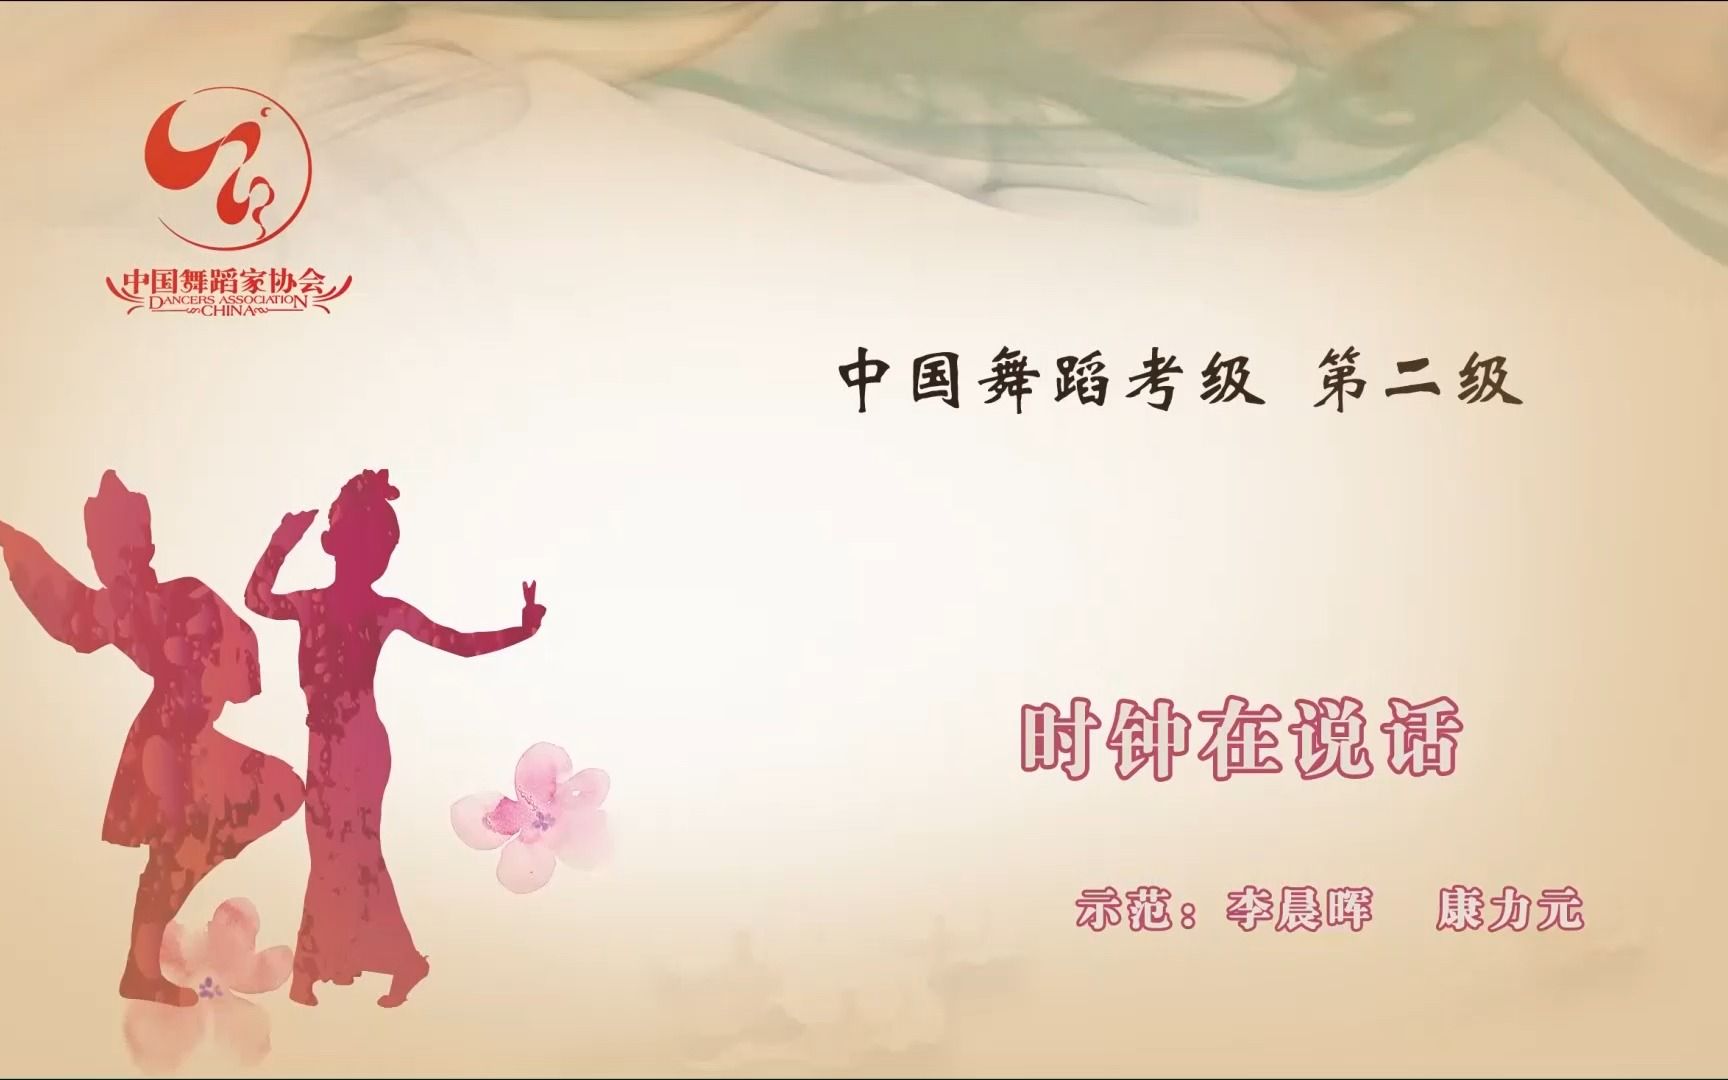 中国舞蹈家协会《中国舞考级》第二级《时钟在说话》